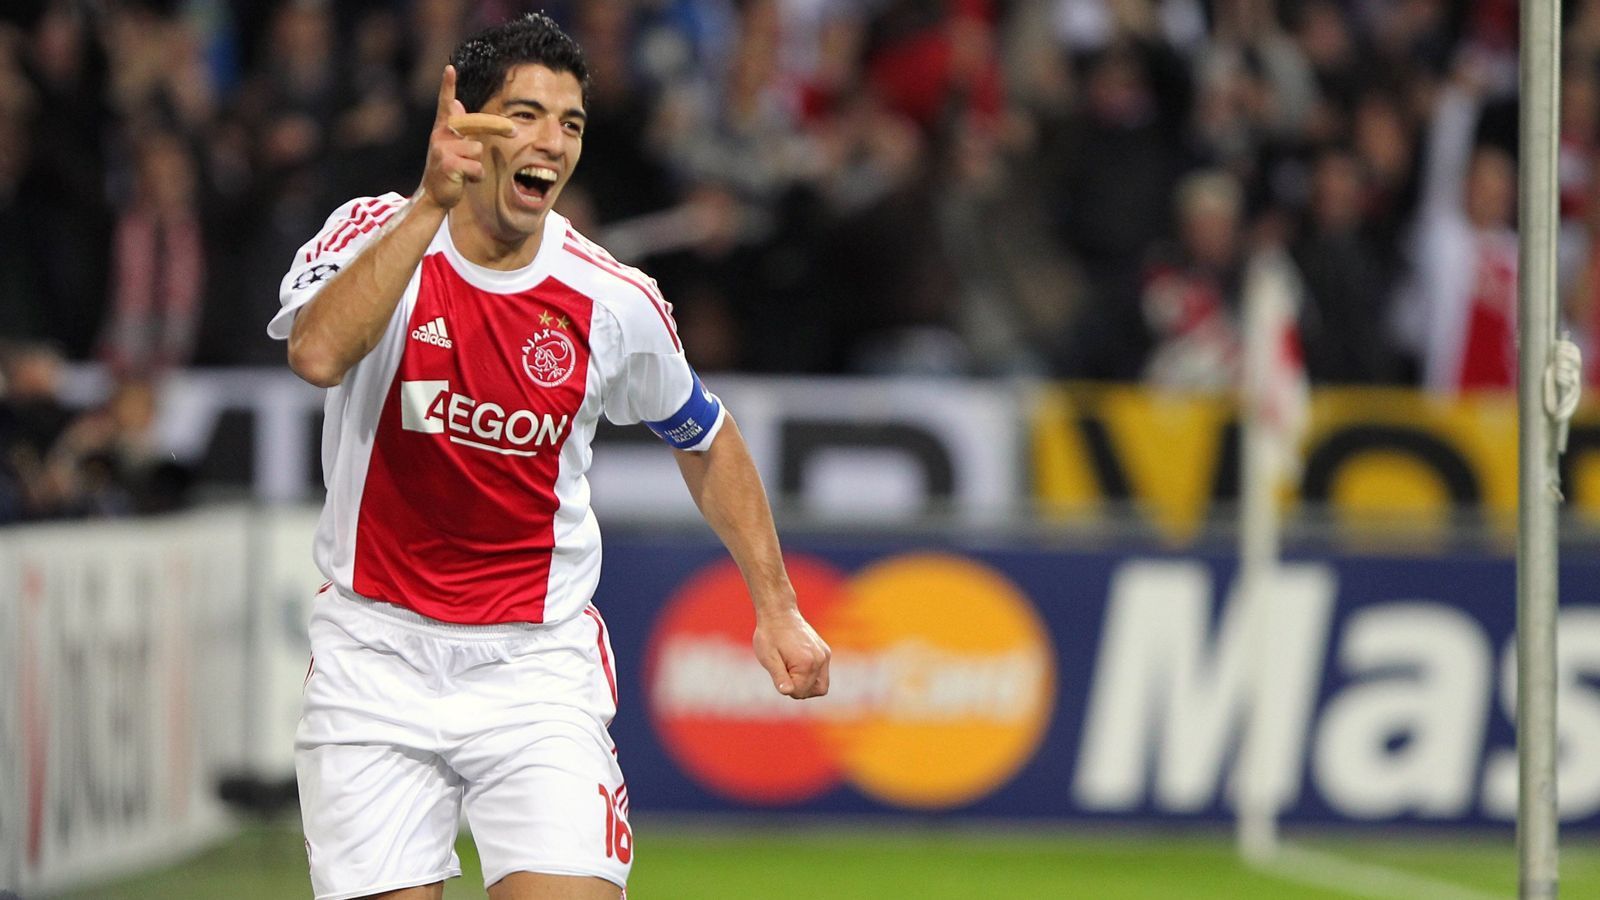 
                <strong>Luis Suarez (Ajax Amsterdam)</strong><br>
                Traf in drei Spielen in Folge nach dem Saisonbeginn 2007/08 und 2010/11
              